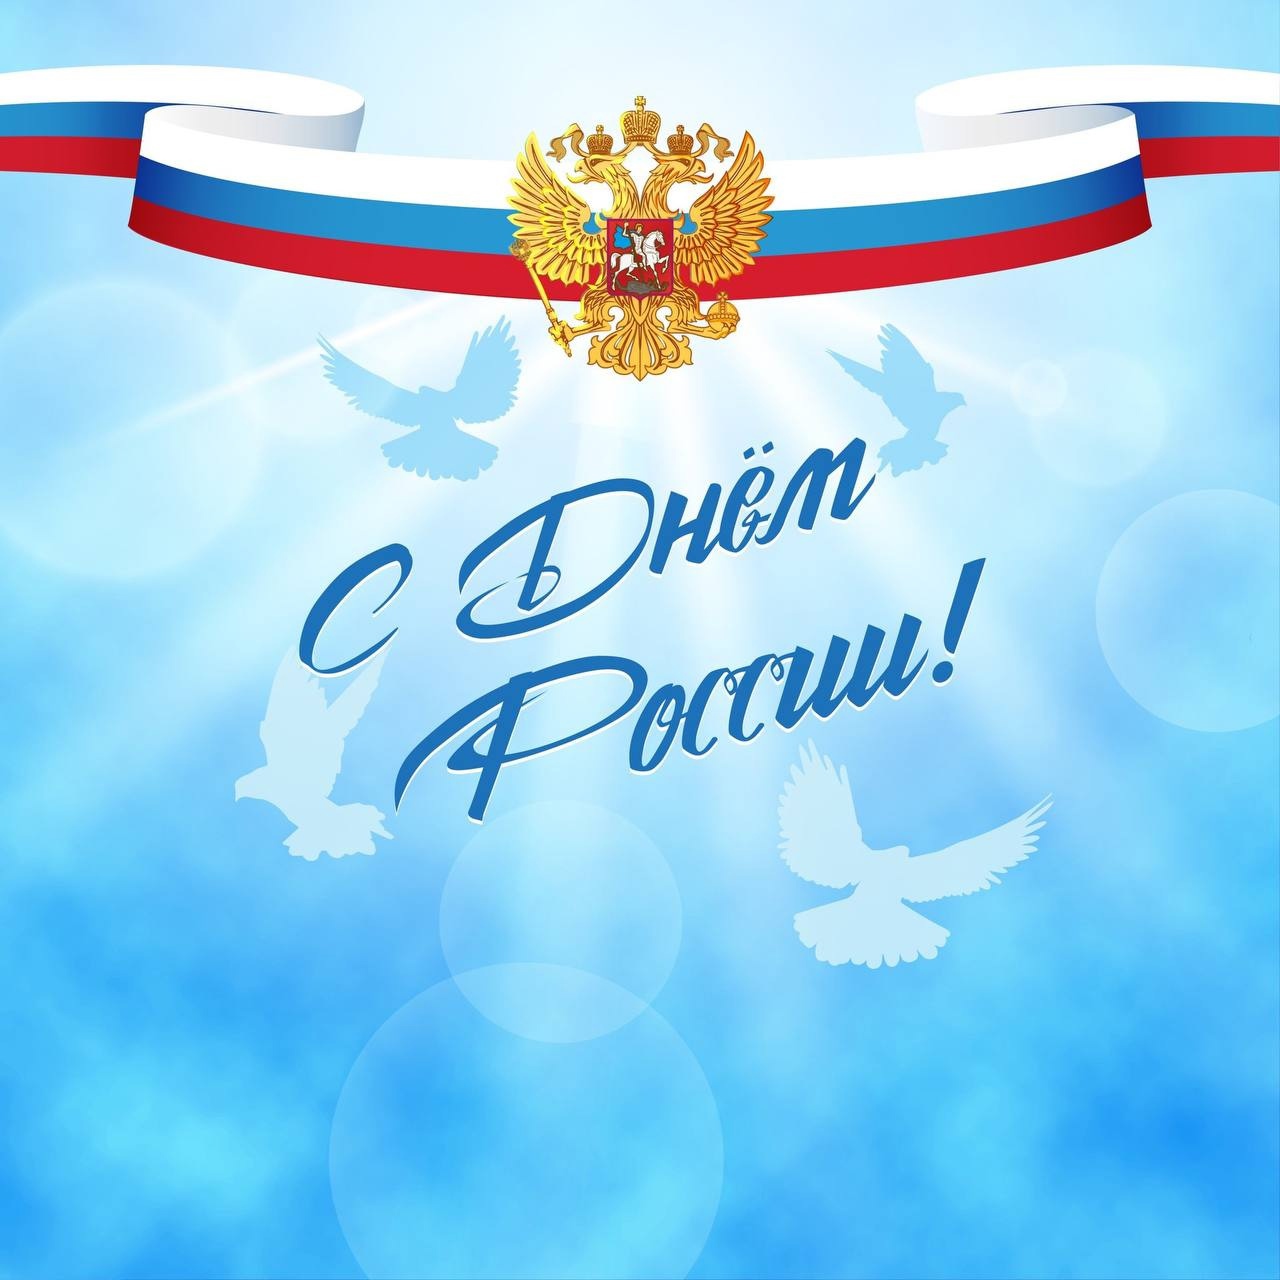 Дорогие собственники, поздравляем Вас с Днём России!
Пусть сила духа принесет развитие и благополучие, даст силы для великих ...